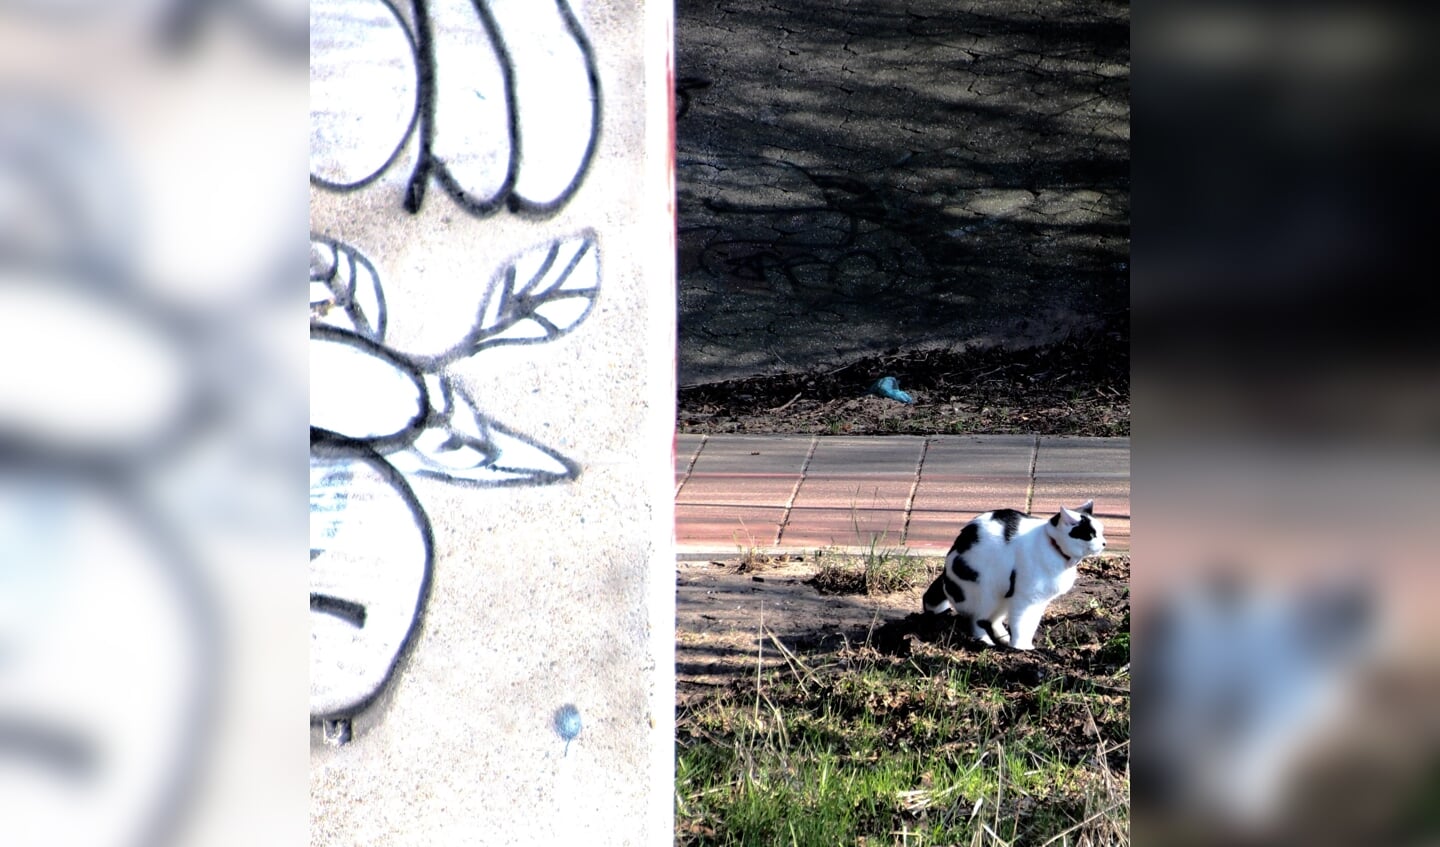 Zwart witte kat kleurt bij de muur met graffiti.